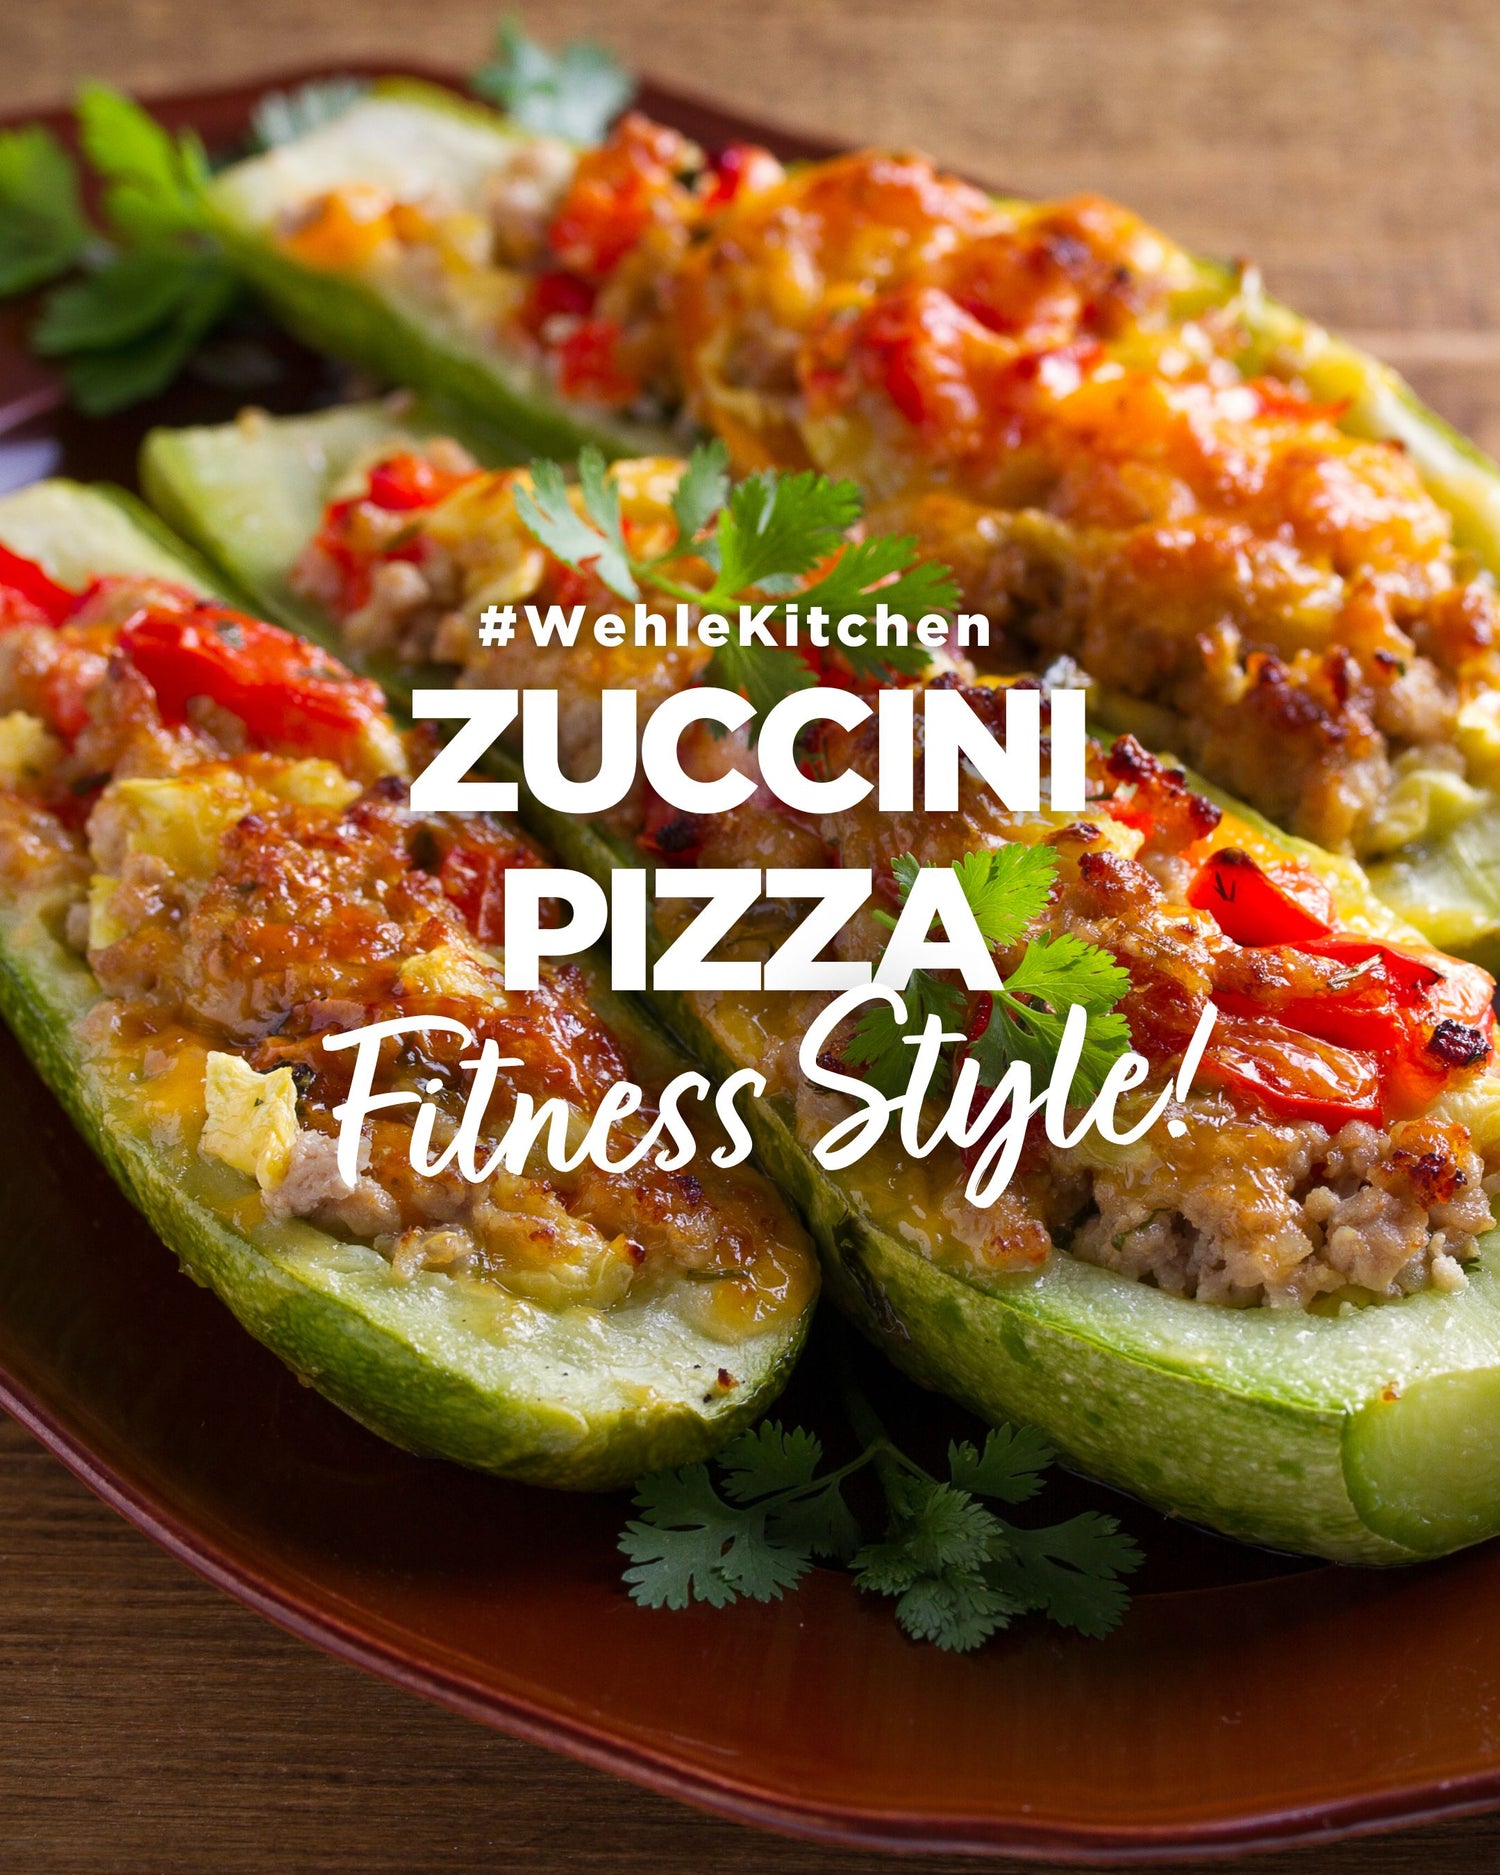 Zucchini-Pizza Gefüllt – Der Fitness-Snack, der Begeistert